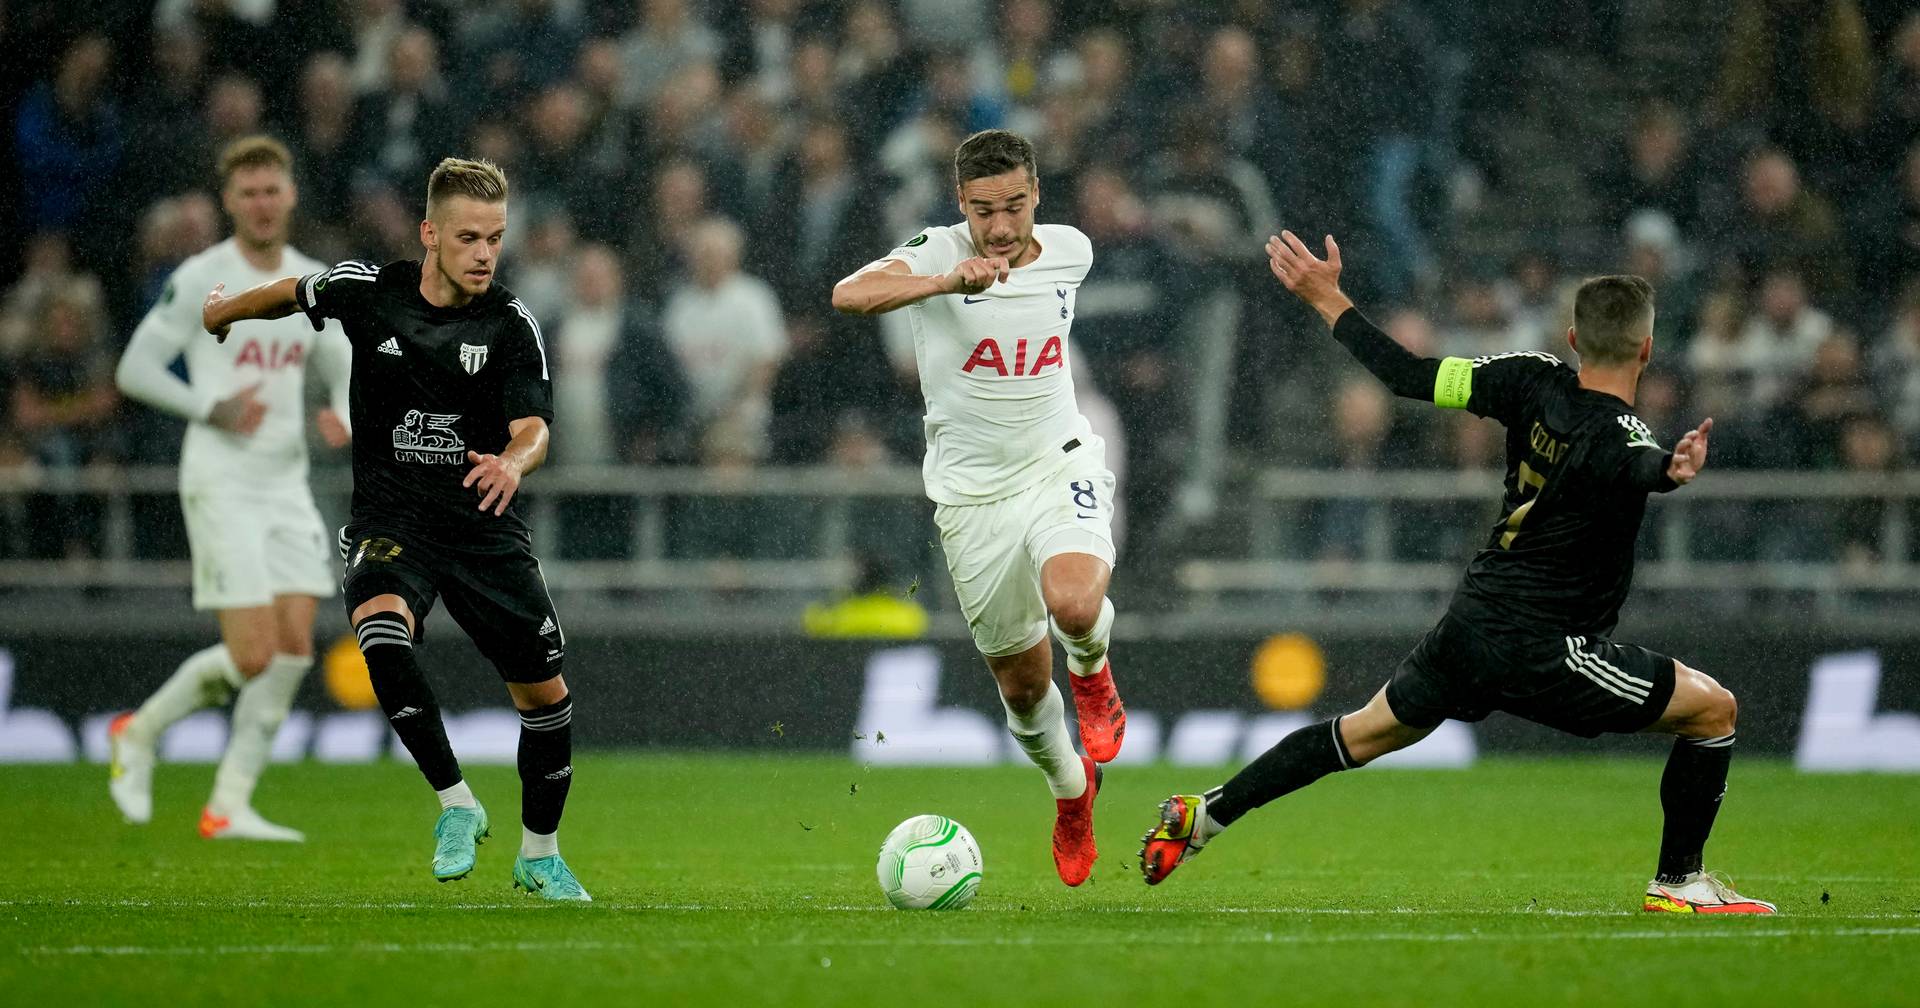 Tottenham, reduzido a 10 jogadores, sofre primeira derrota na Liga inglesa  - SIC Notícias